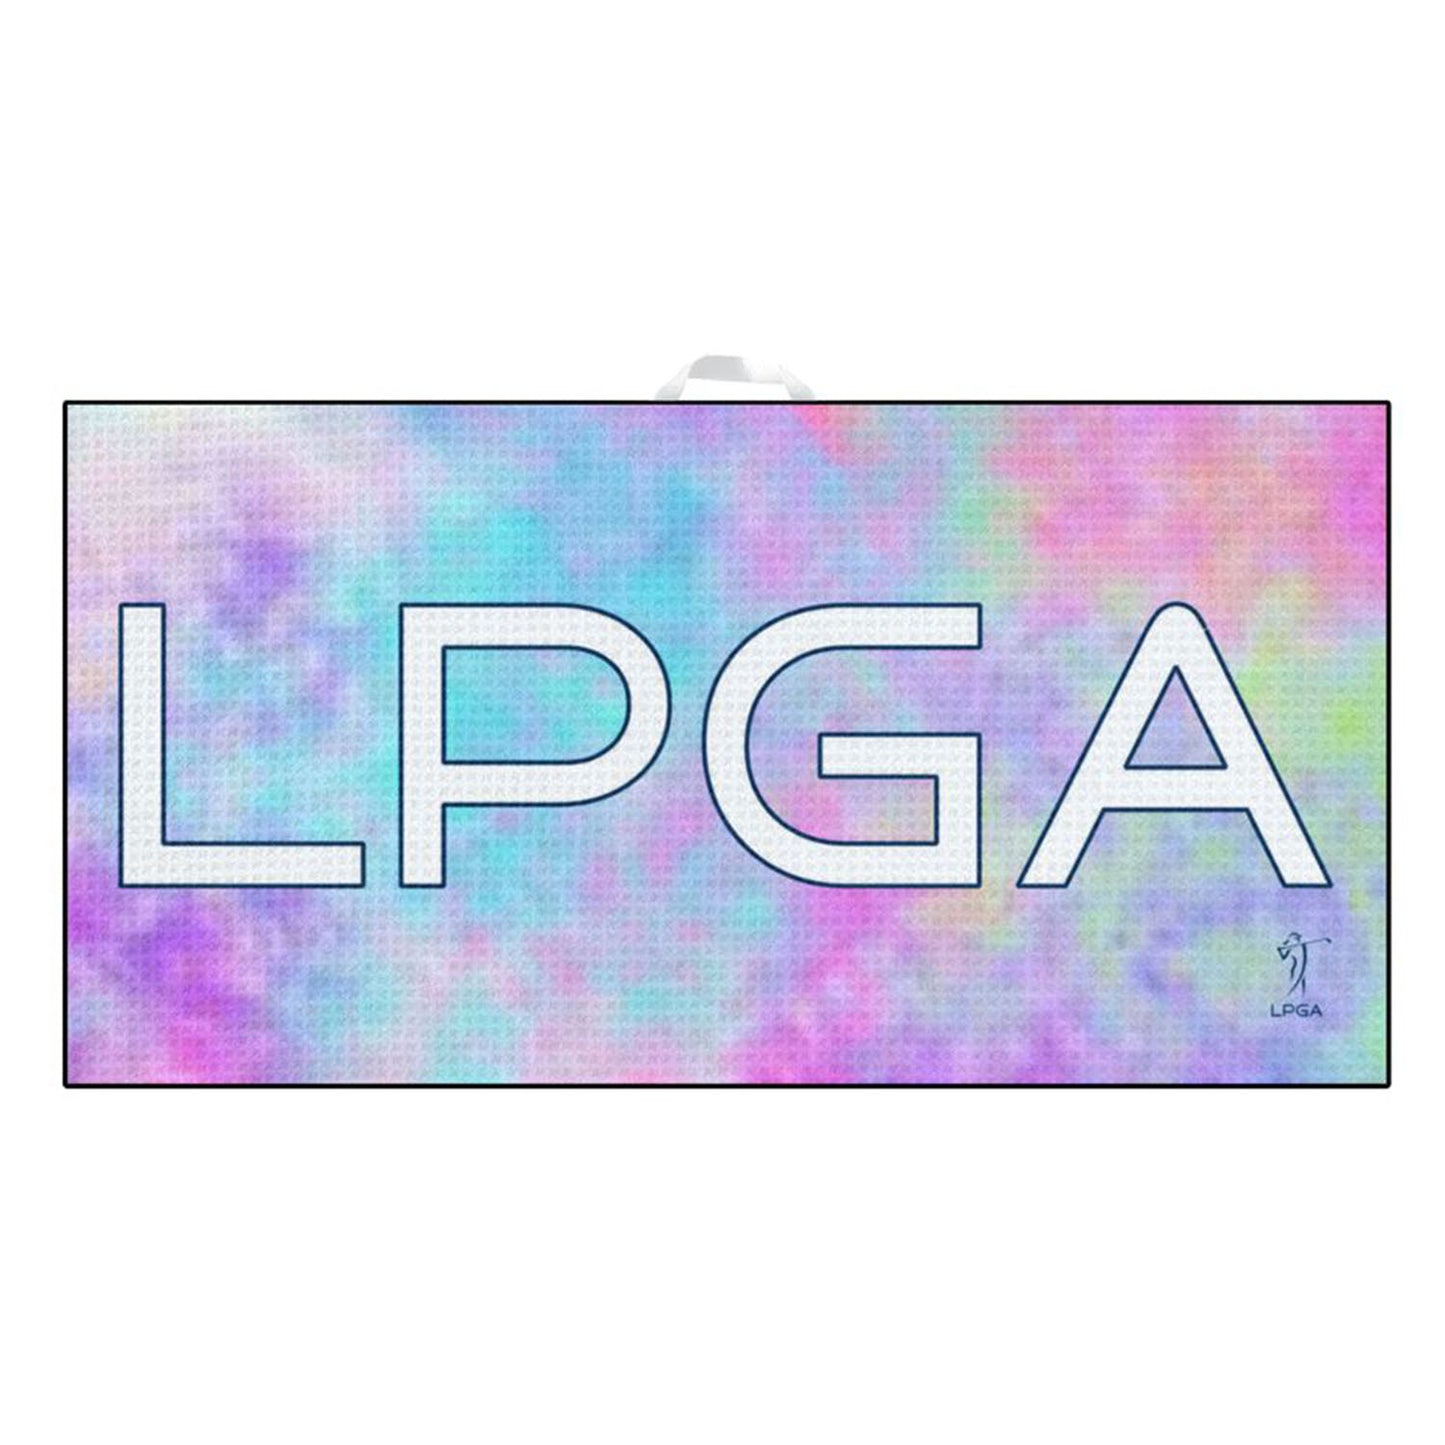 Devant Sport LPGA Ultimate Microfiber Towel - Front View